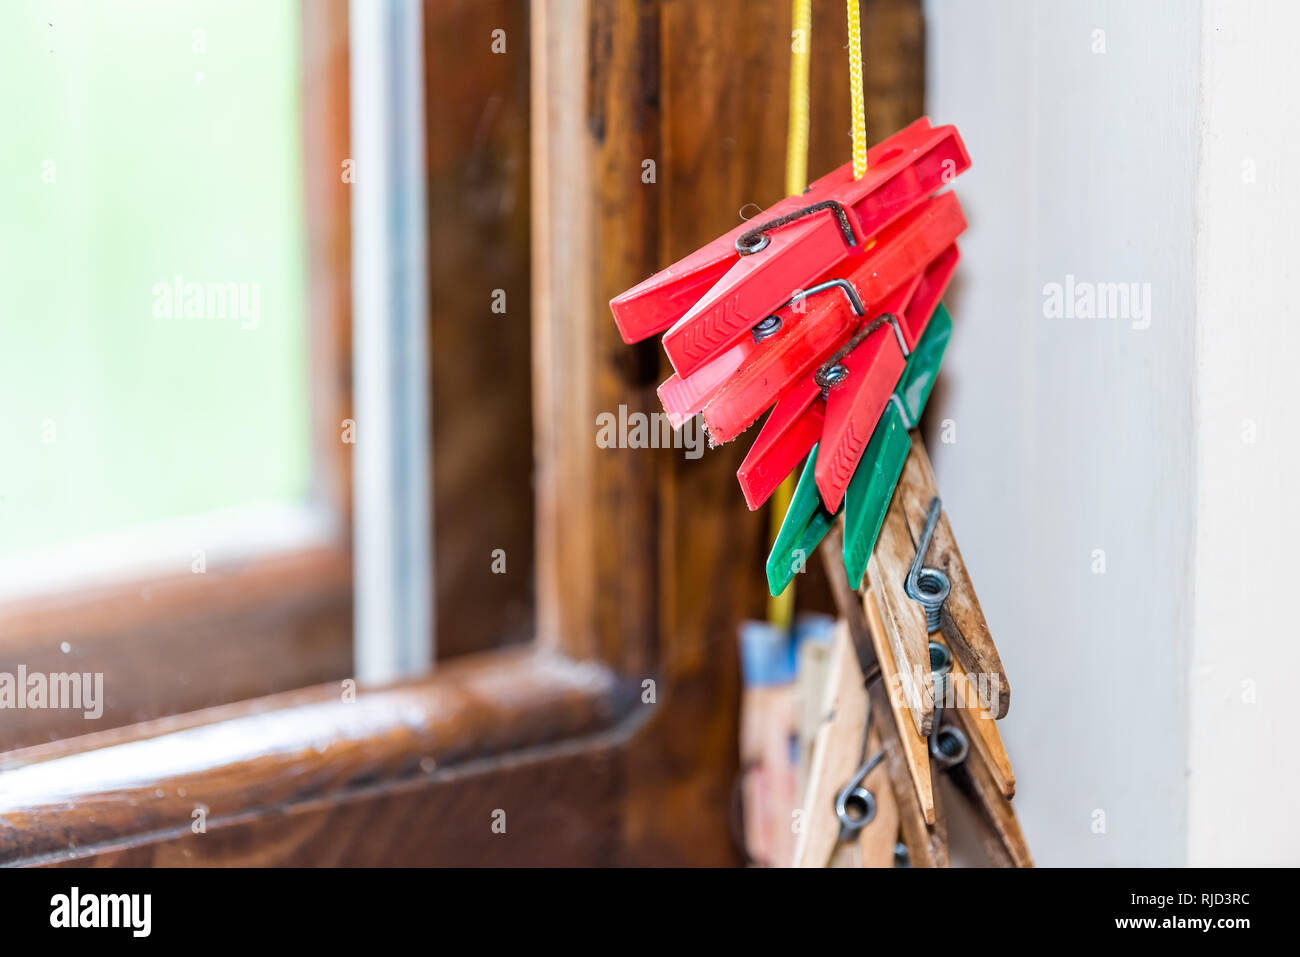 Primo piano di molti rosso e verde clothespins in legno per appendere gli abiti in estate da una finestra in stile rustico paese retrò home dacha in Ucraina o in Russia Foto Stock